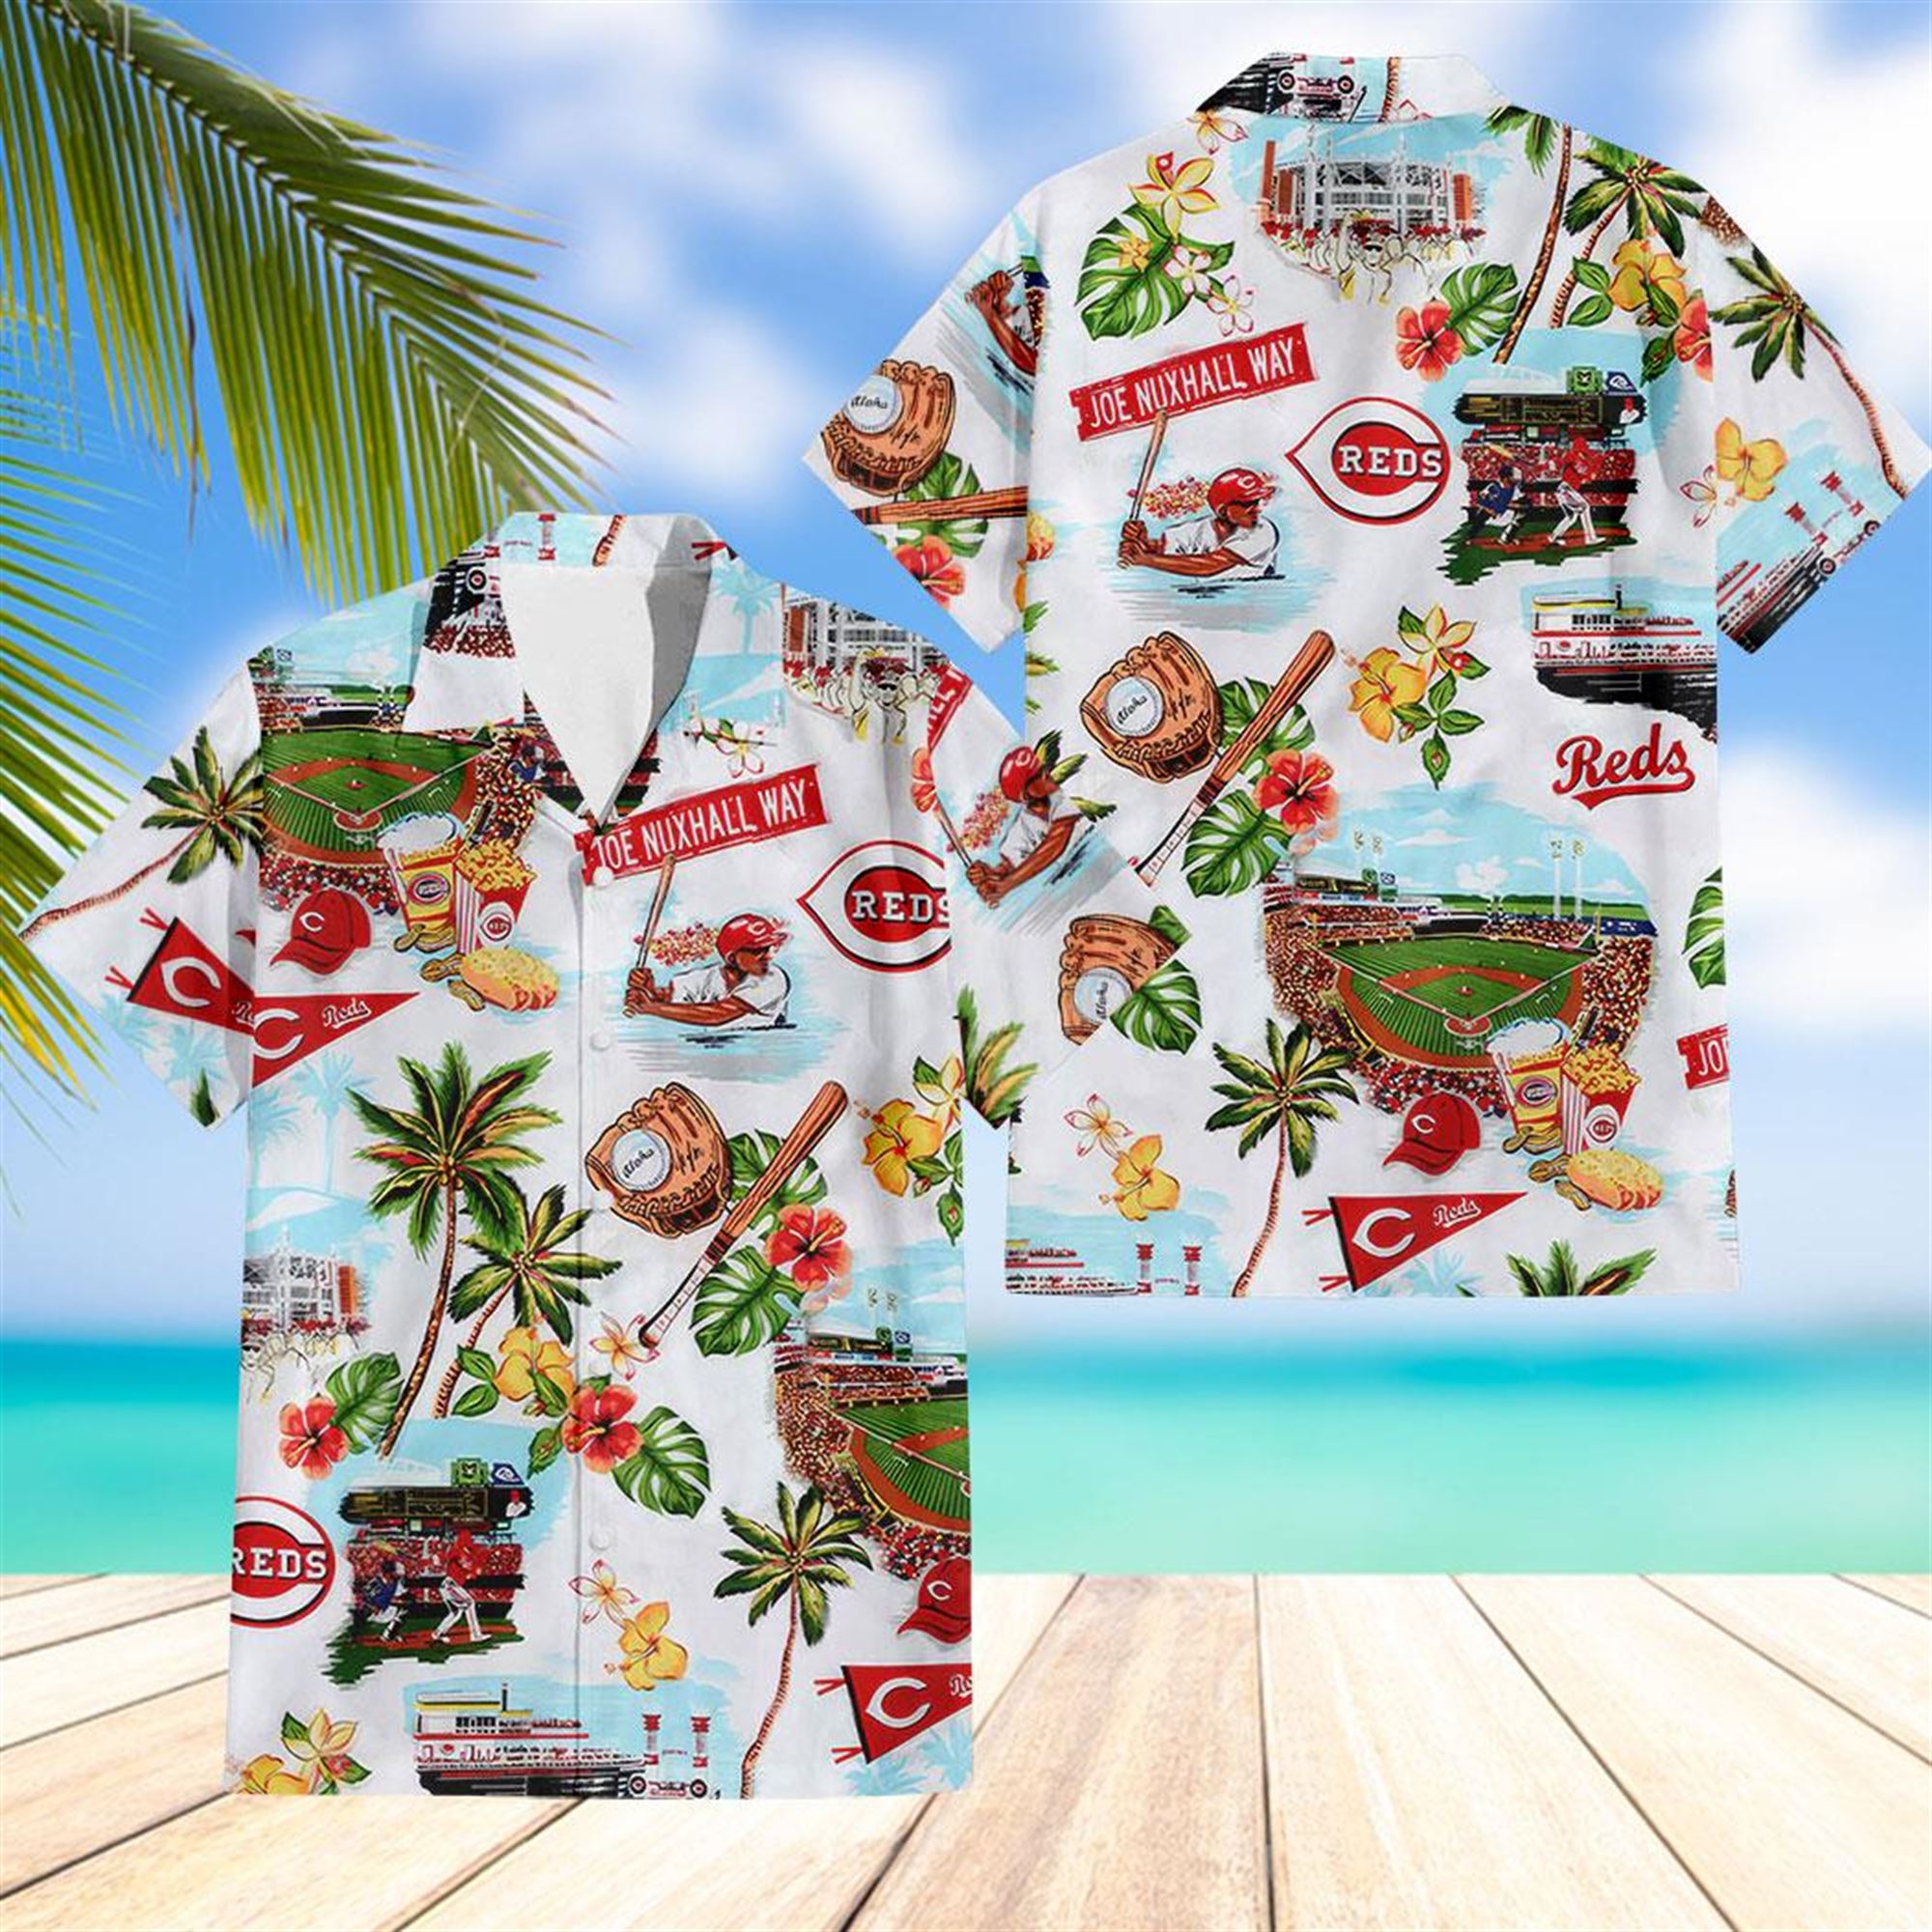 Boston Red Sox Palm Tree Hawaiian Aloha Shirt